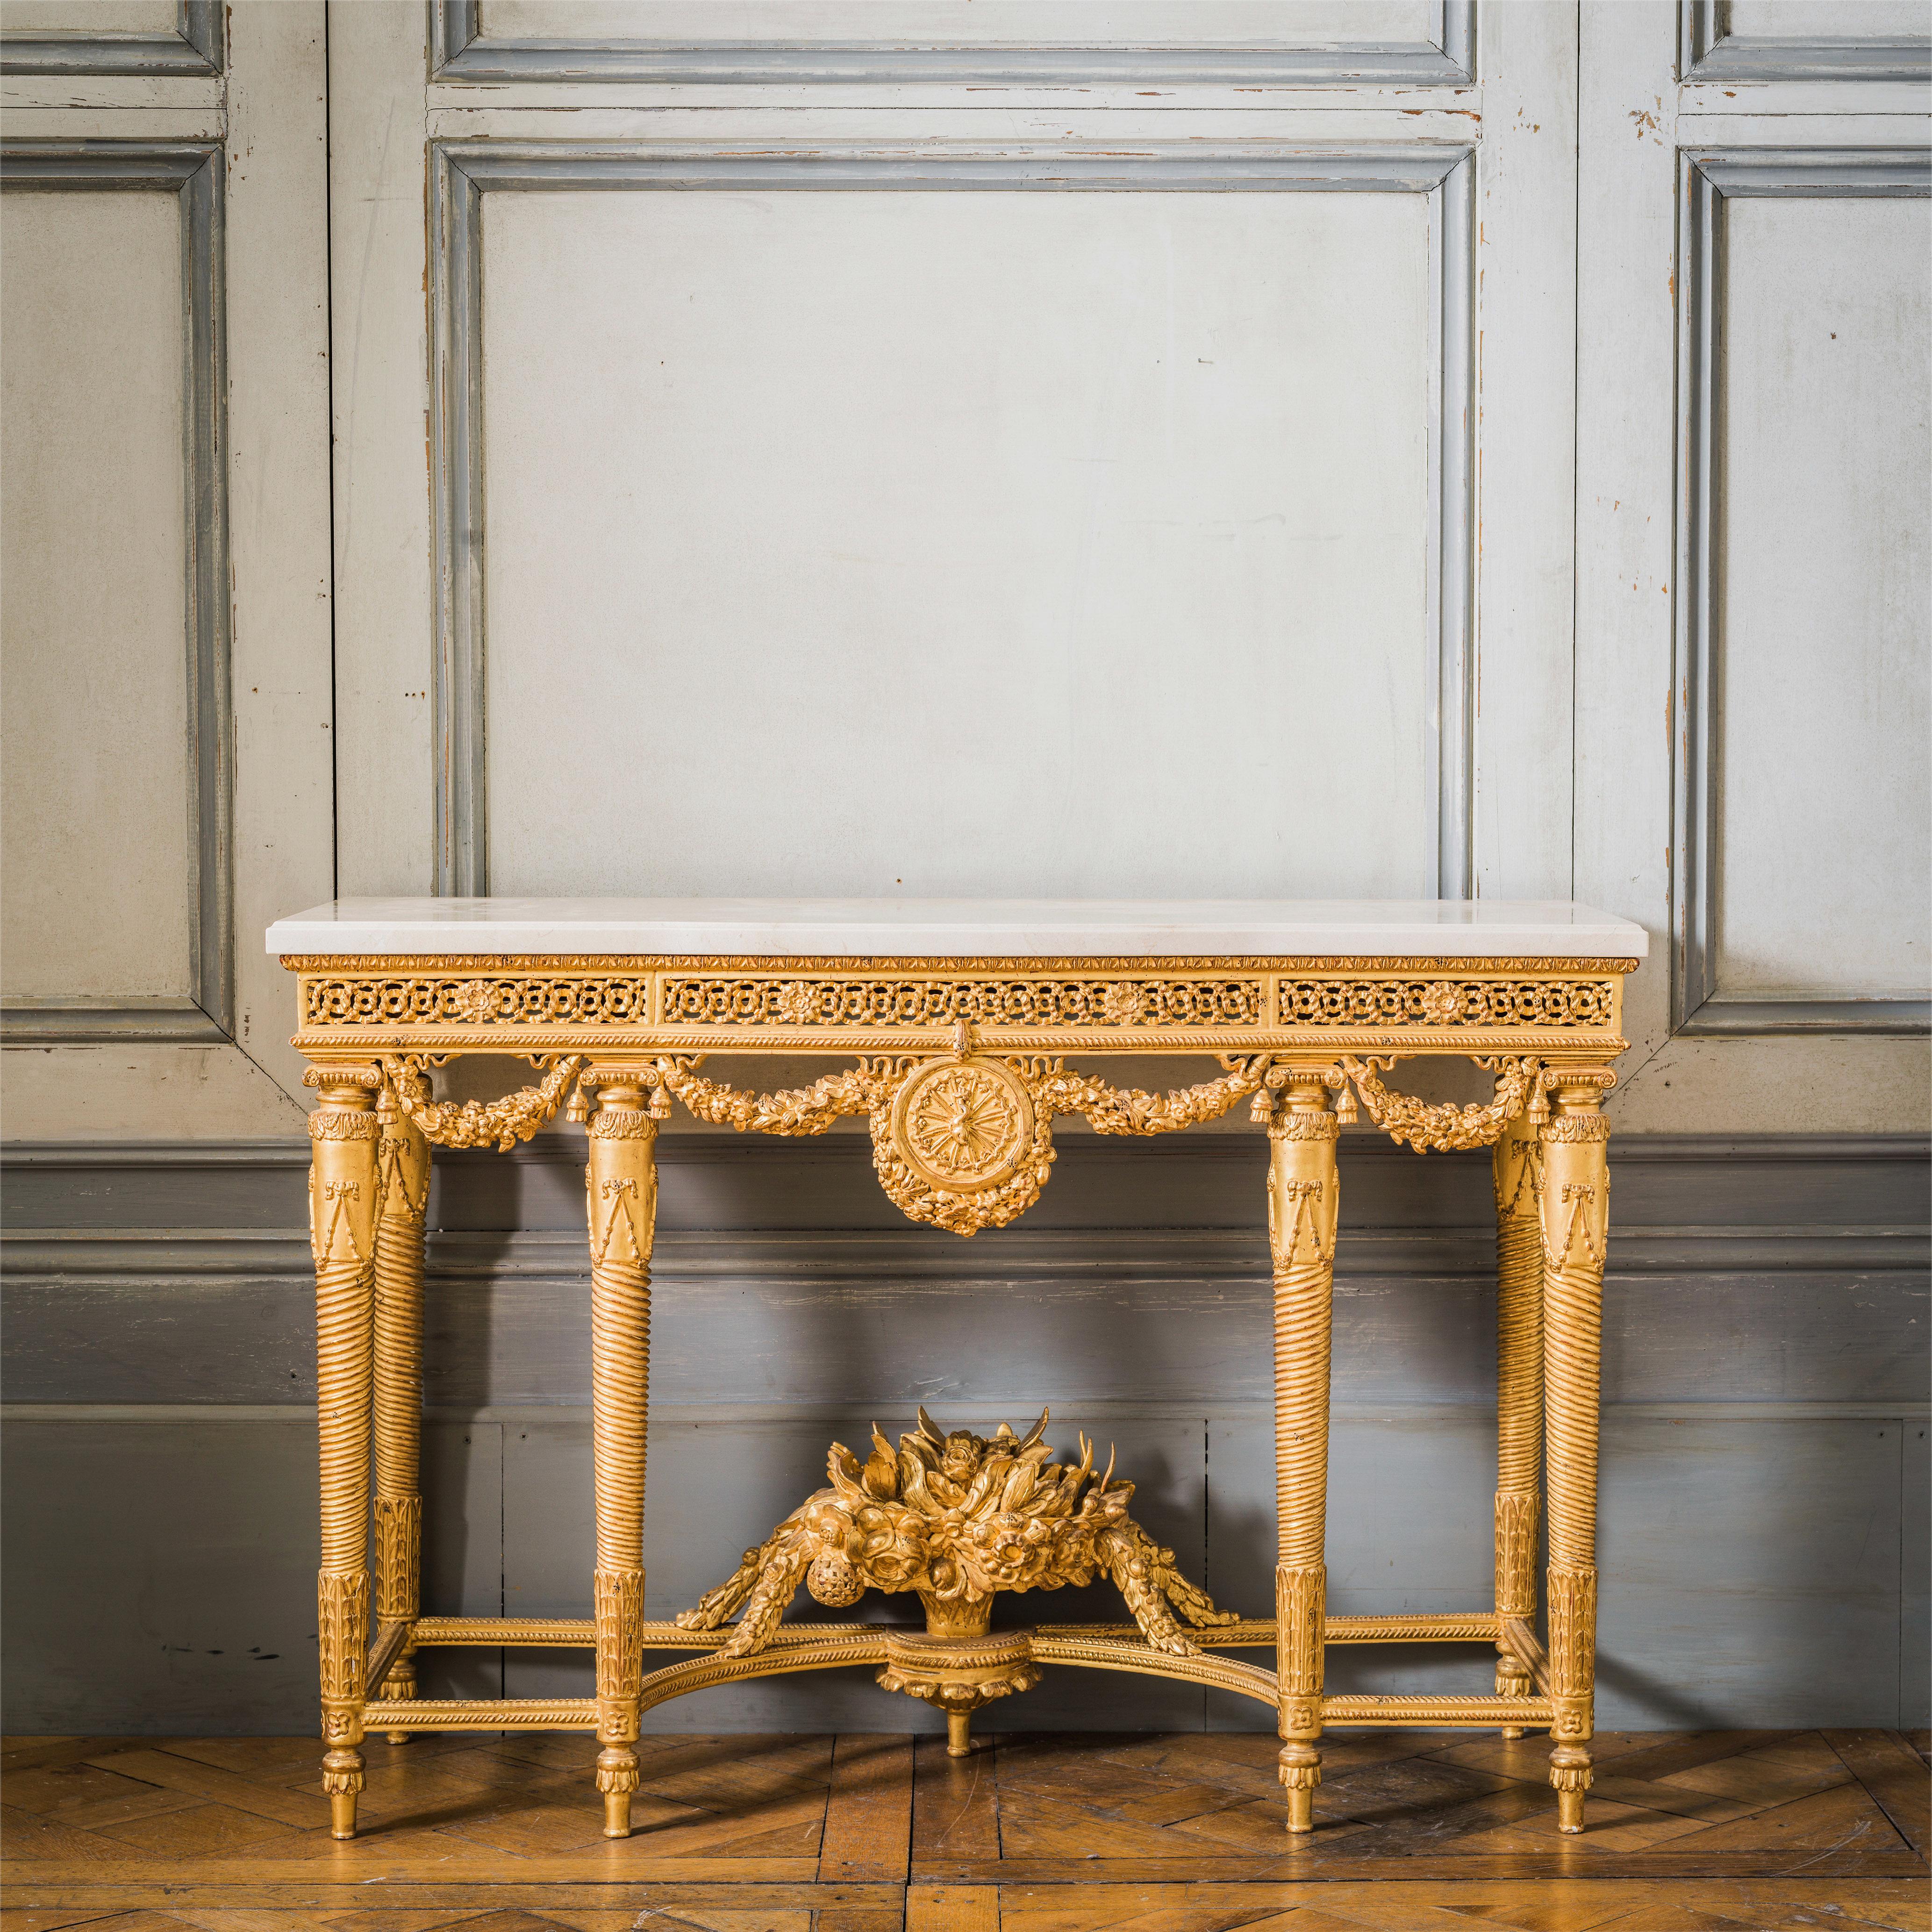 Konsolen aus vergoldetem Holz im Stil Louis XVI: Von Meisterhand gefertigt, elegant geschnitzt und von Hand mit einer wasservergoldeten Patina aus 23,75-karätigem Blattgold überzogen. Mit 30 mm Crema Marfil abgeschrägten Marmorplatten.
Wir haben 2